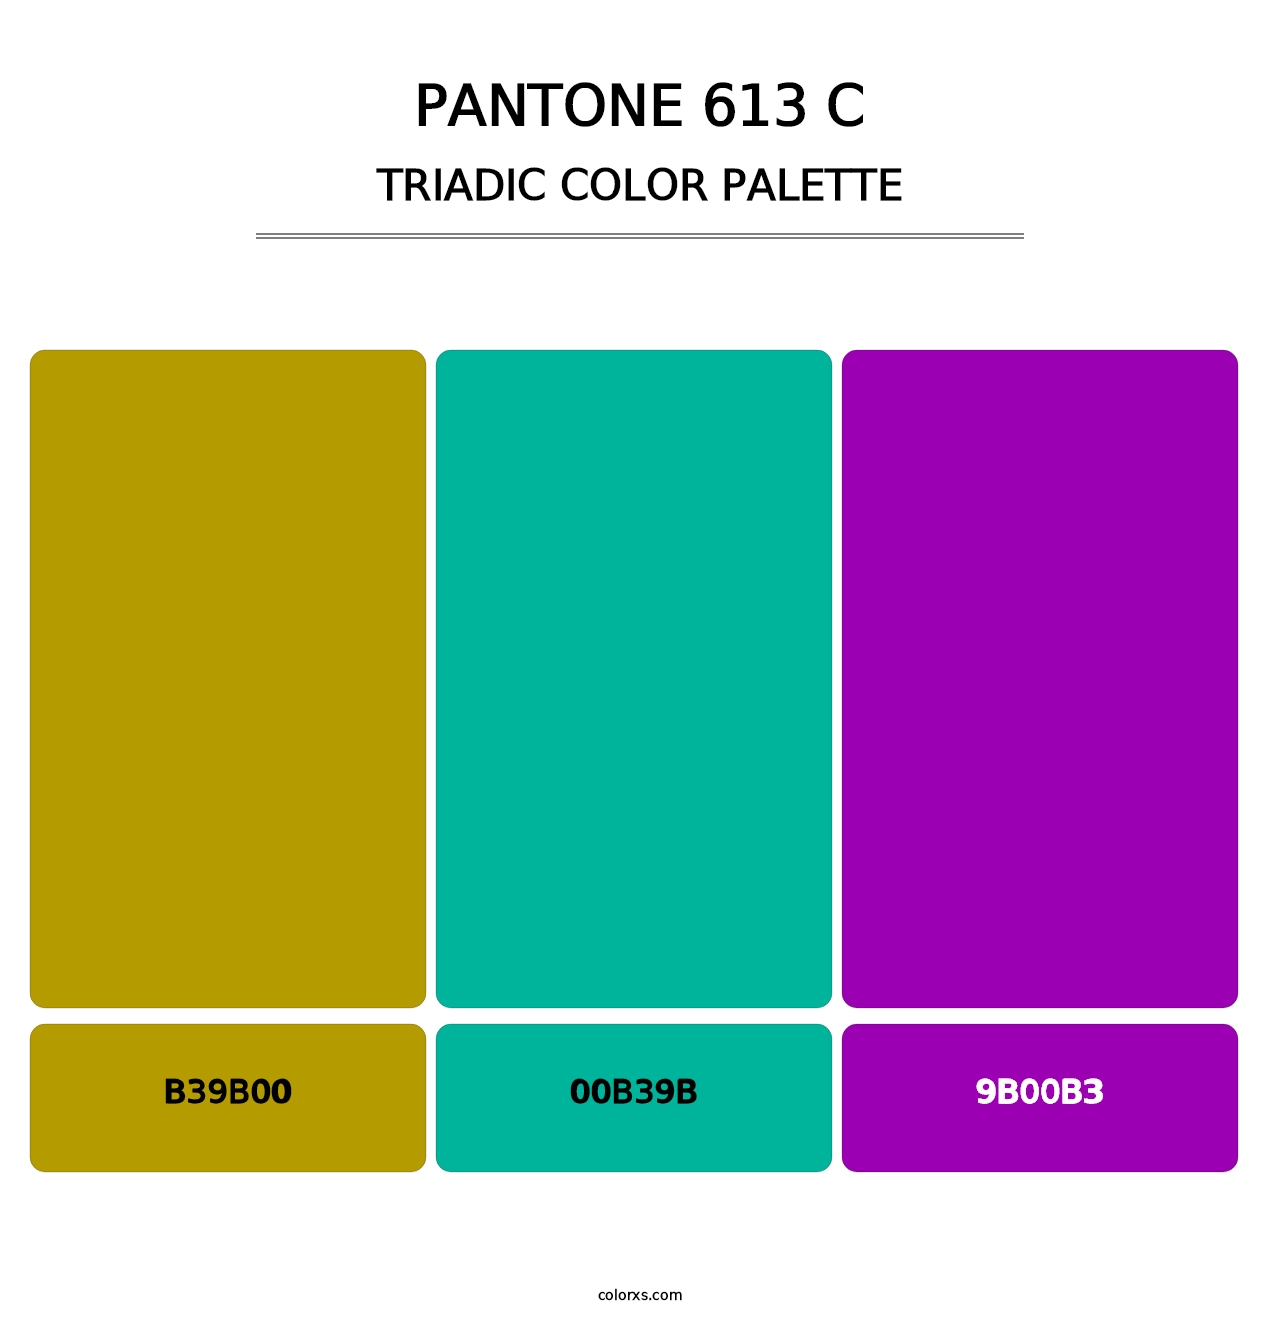 PANTONE 613 C - Triadic Color Palette